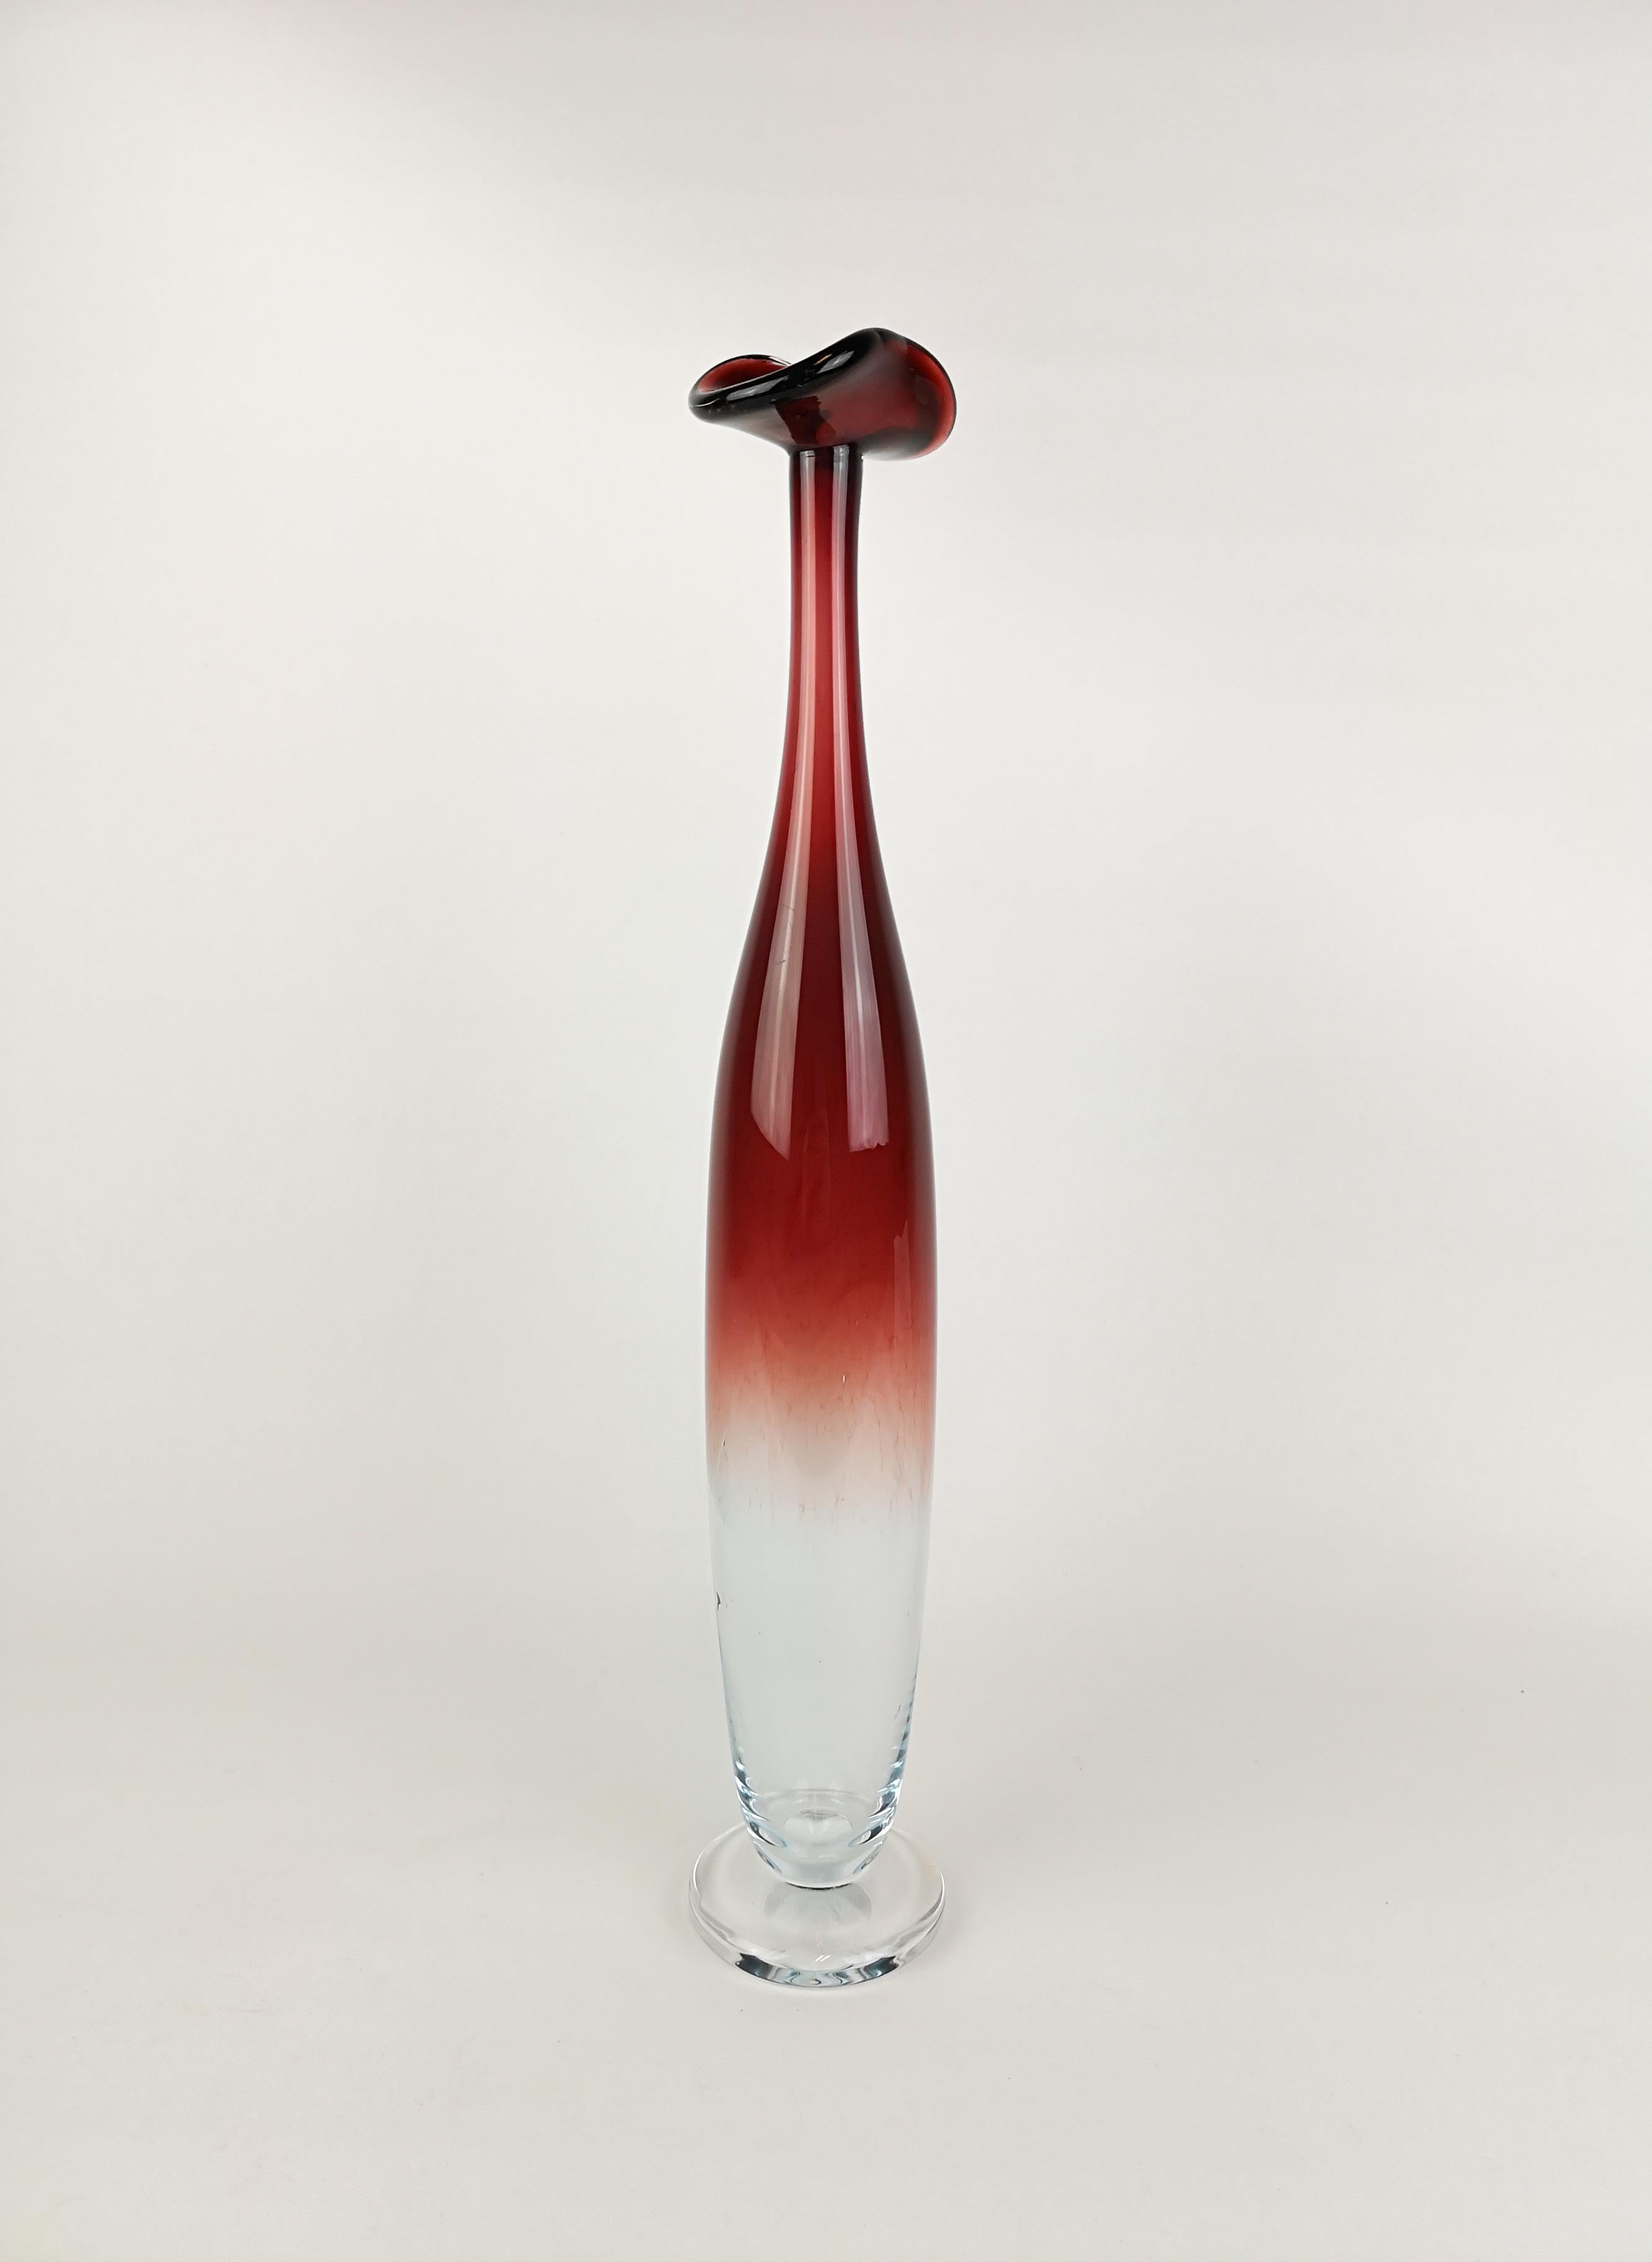 Vase à tulipes Orrefors Expo conçu par Nils Landberg. 
Merveilleux verre avec une couleur rouge exceptionnelle qui collabore avec le verre clair. 
Ce vase est doté d'un magnifique couvercle. Il est en très bon état. 

Mesures : 38 cm. Signé